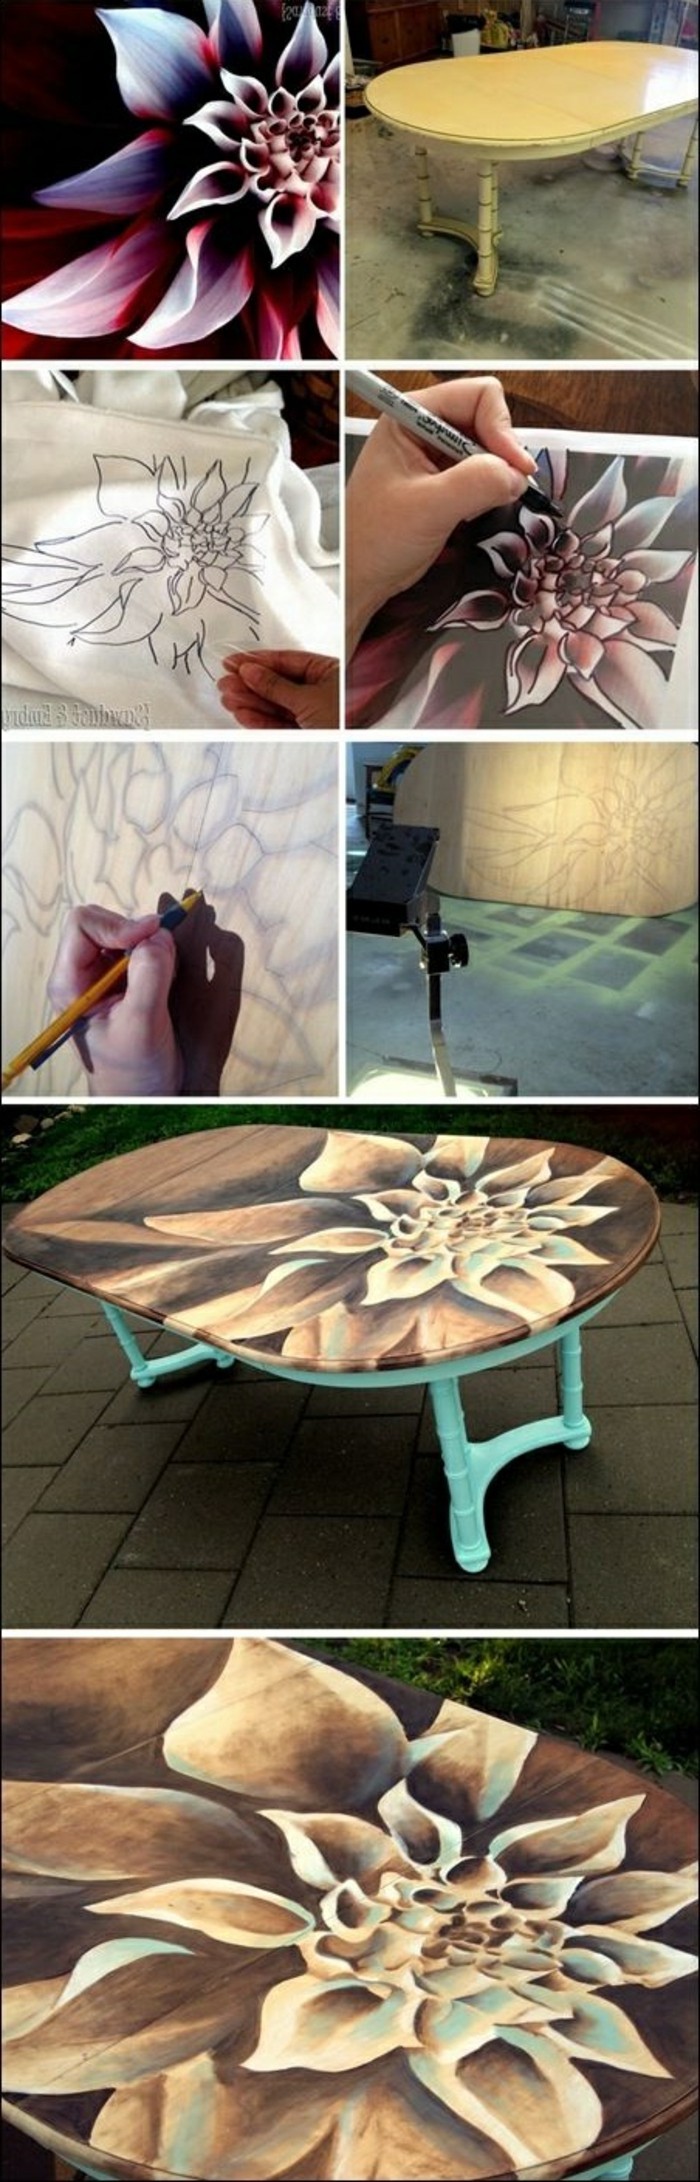 DIY-moebel-creativa-Wohnideen-table-decoración con las flores de la